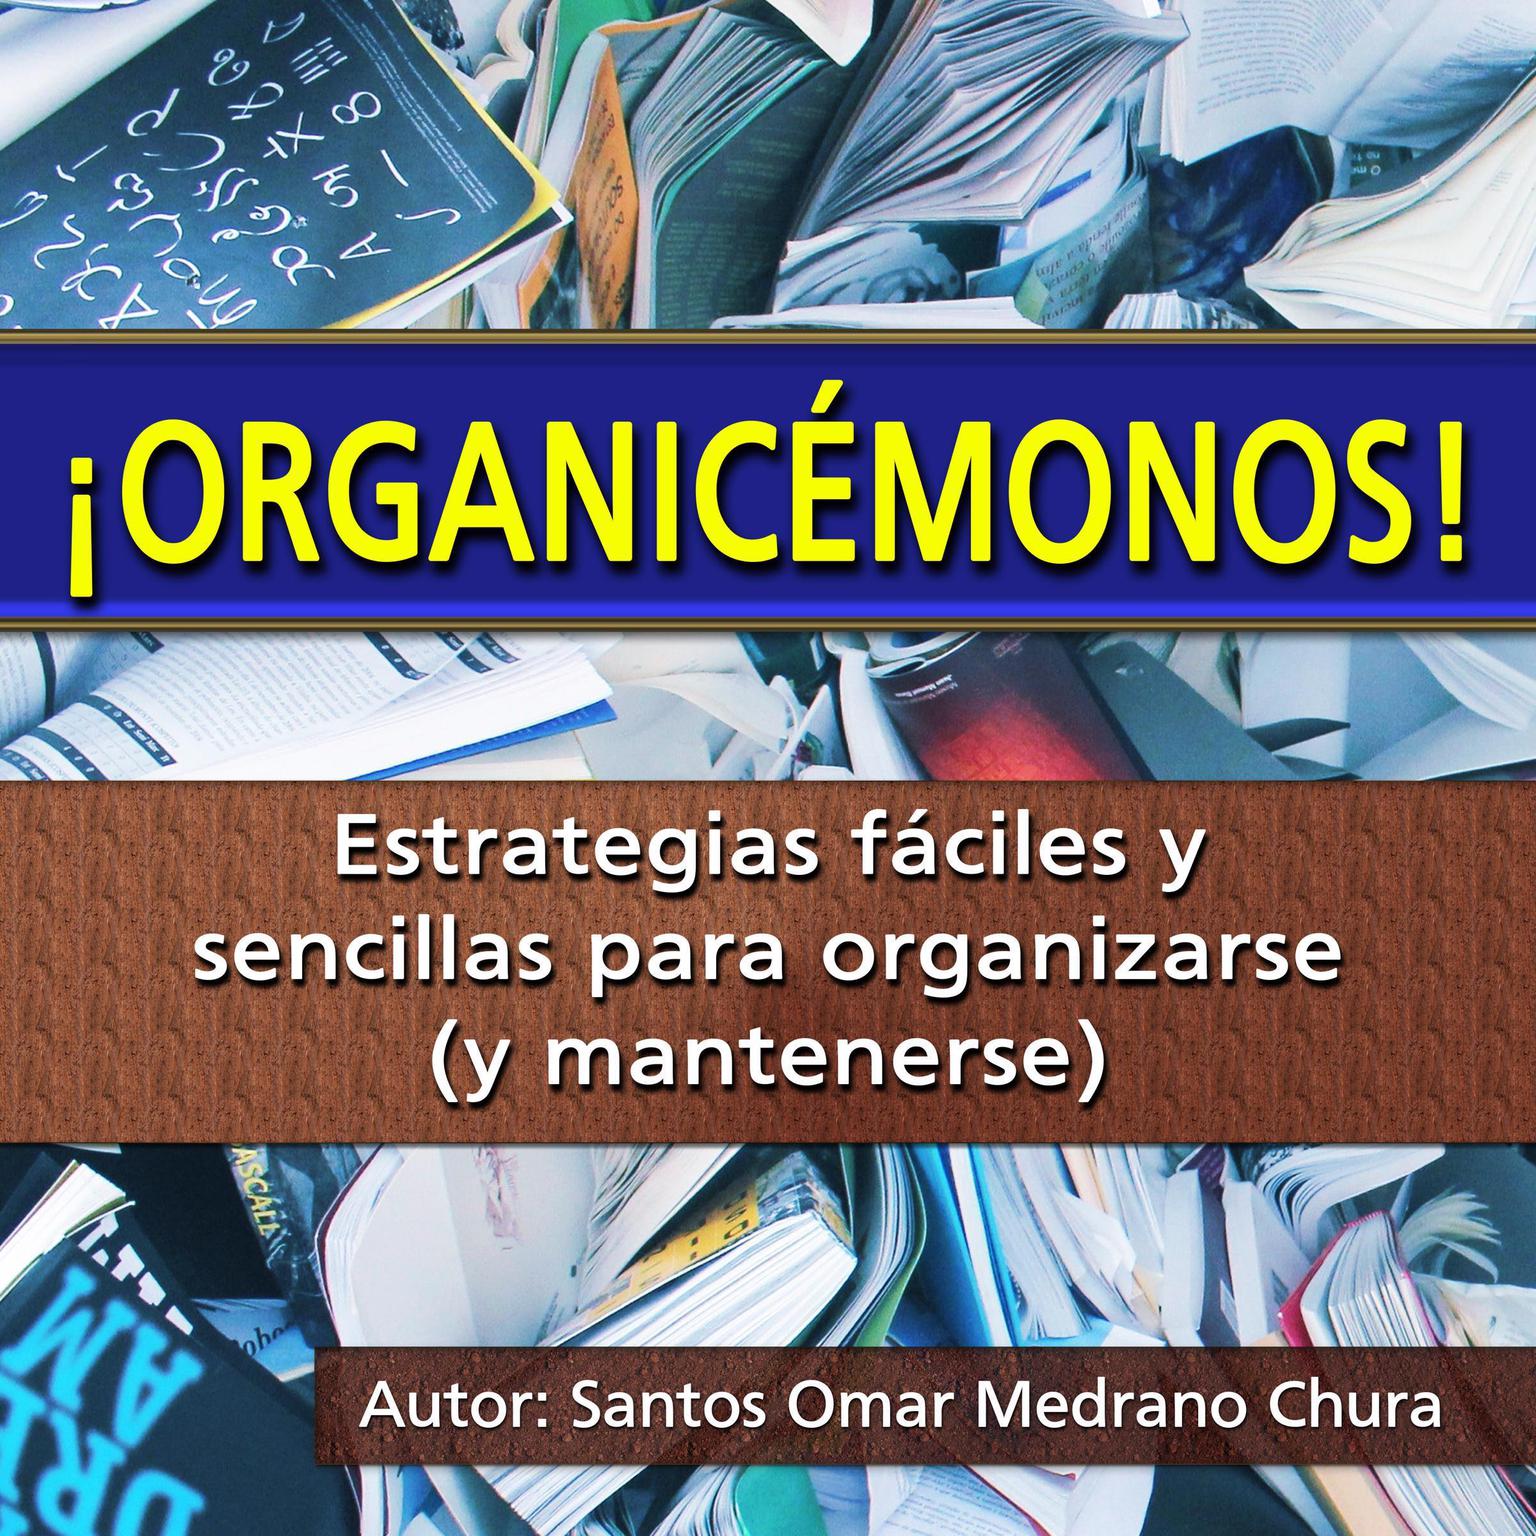 ¡Organicémonos!: Estrategias fáciles y sencillas para organizarse (y mantenerse) Audiobook, by Santos Omar Medrano Chura